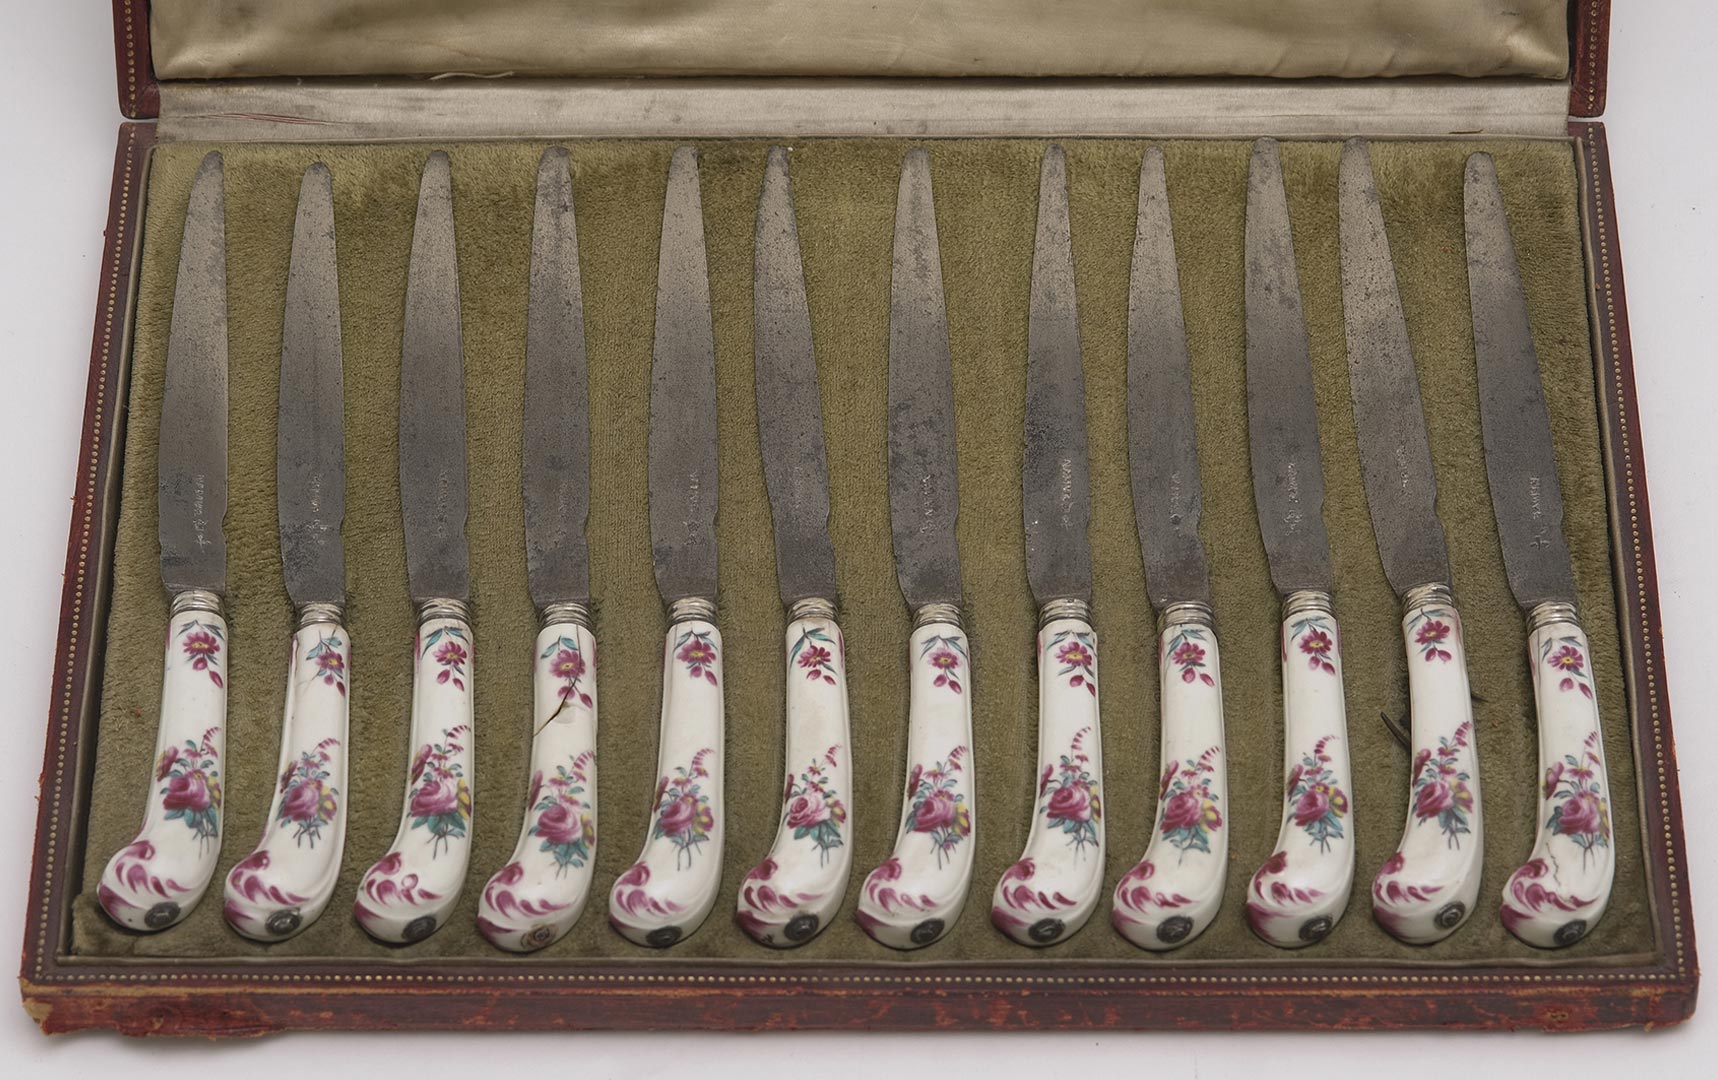 Anonyme, Série de 12 couteaux crosse à manche en porcelaine de Tournai polychrome, lame en métal gravée "Namur", 18e siècle. (Coutellerie)